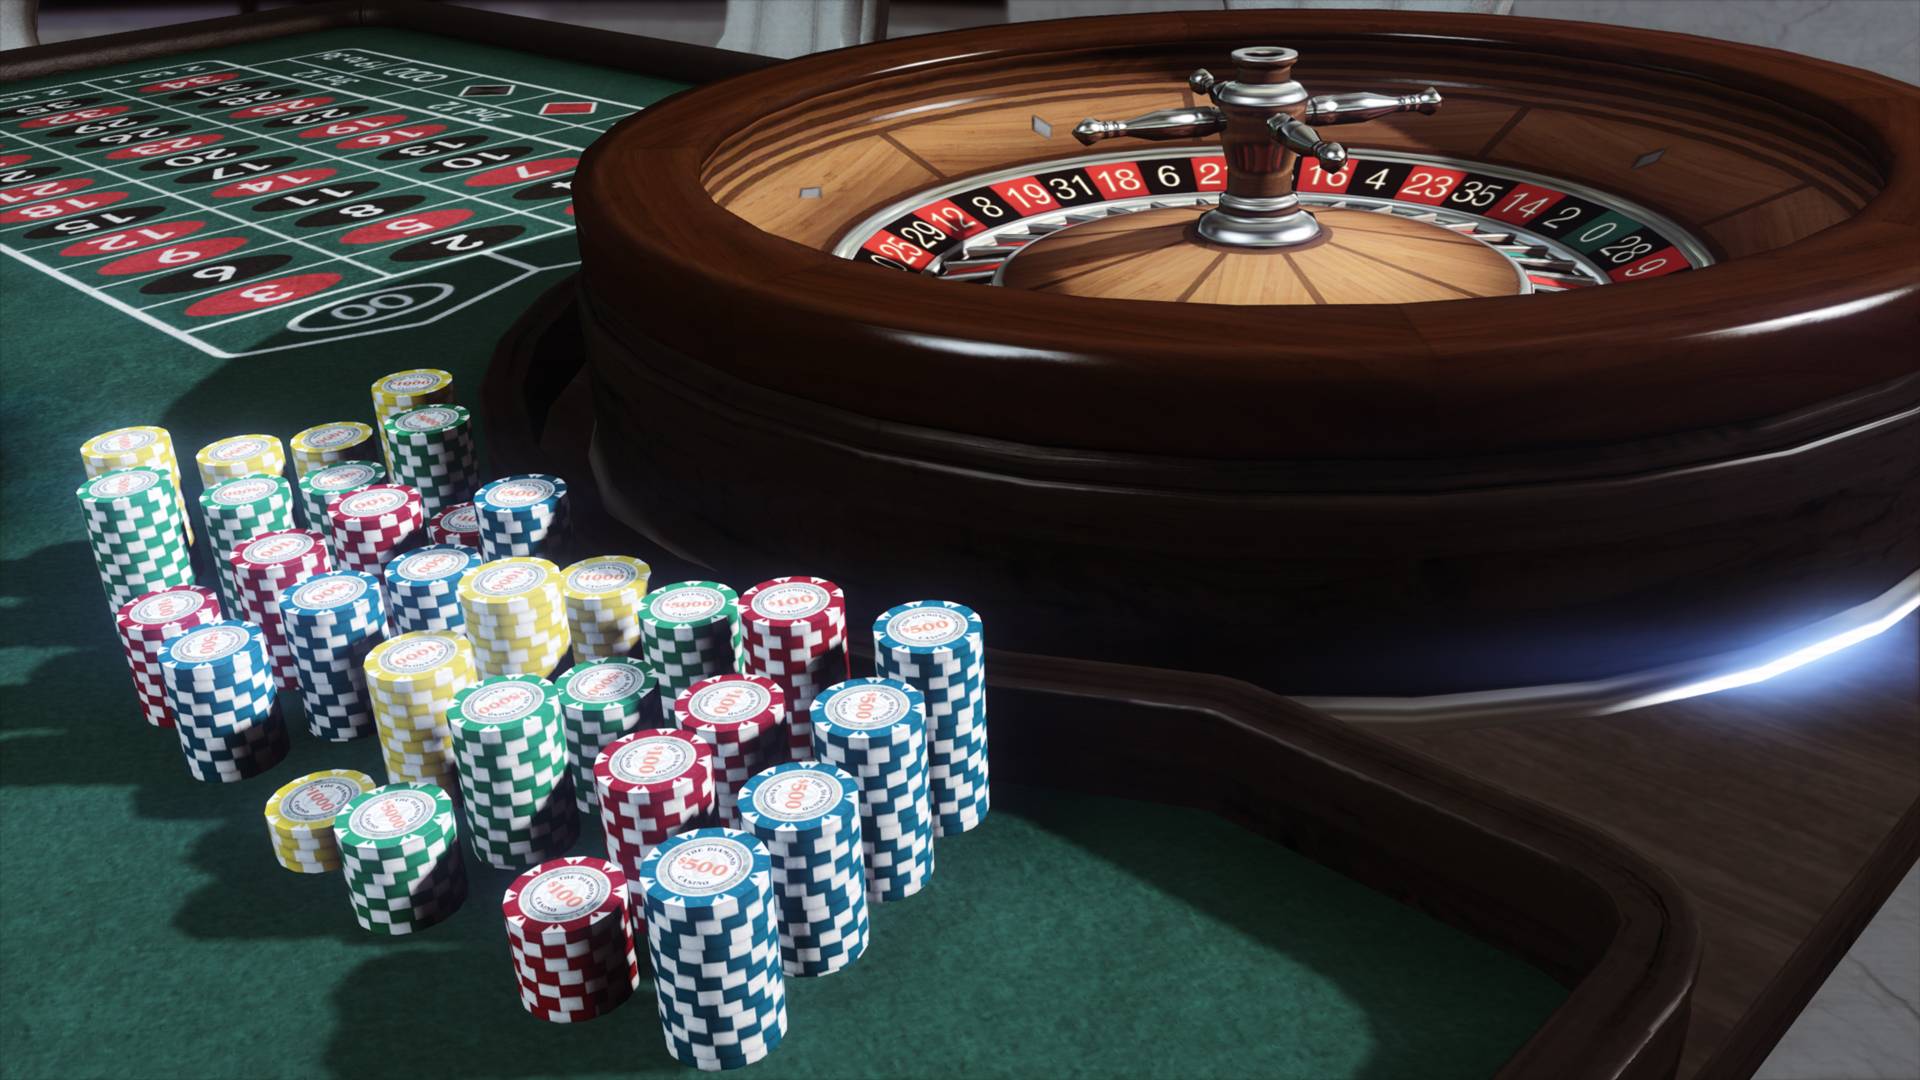 GTA Online’s Casino opens its doors next week